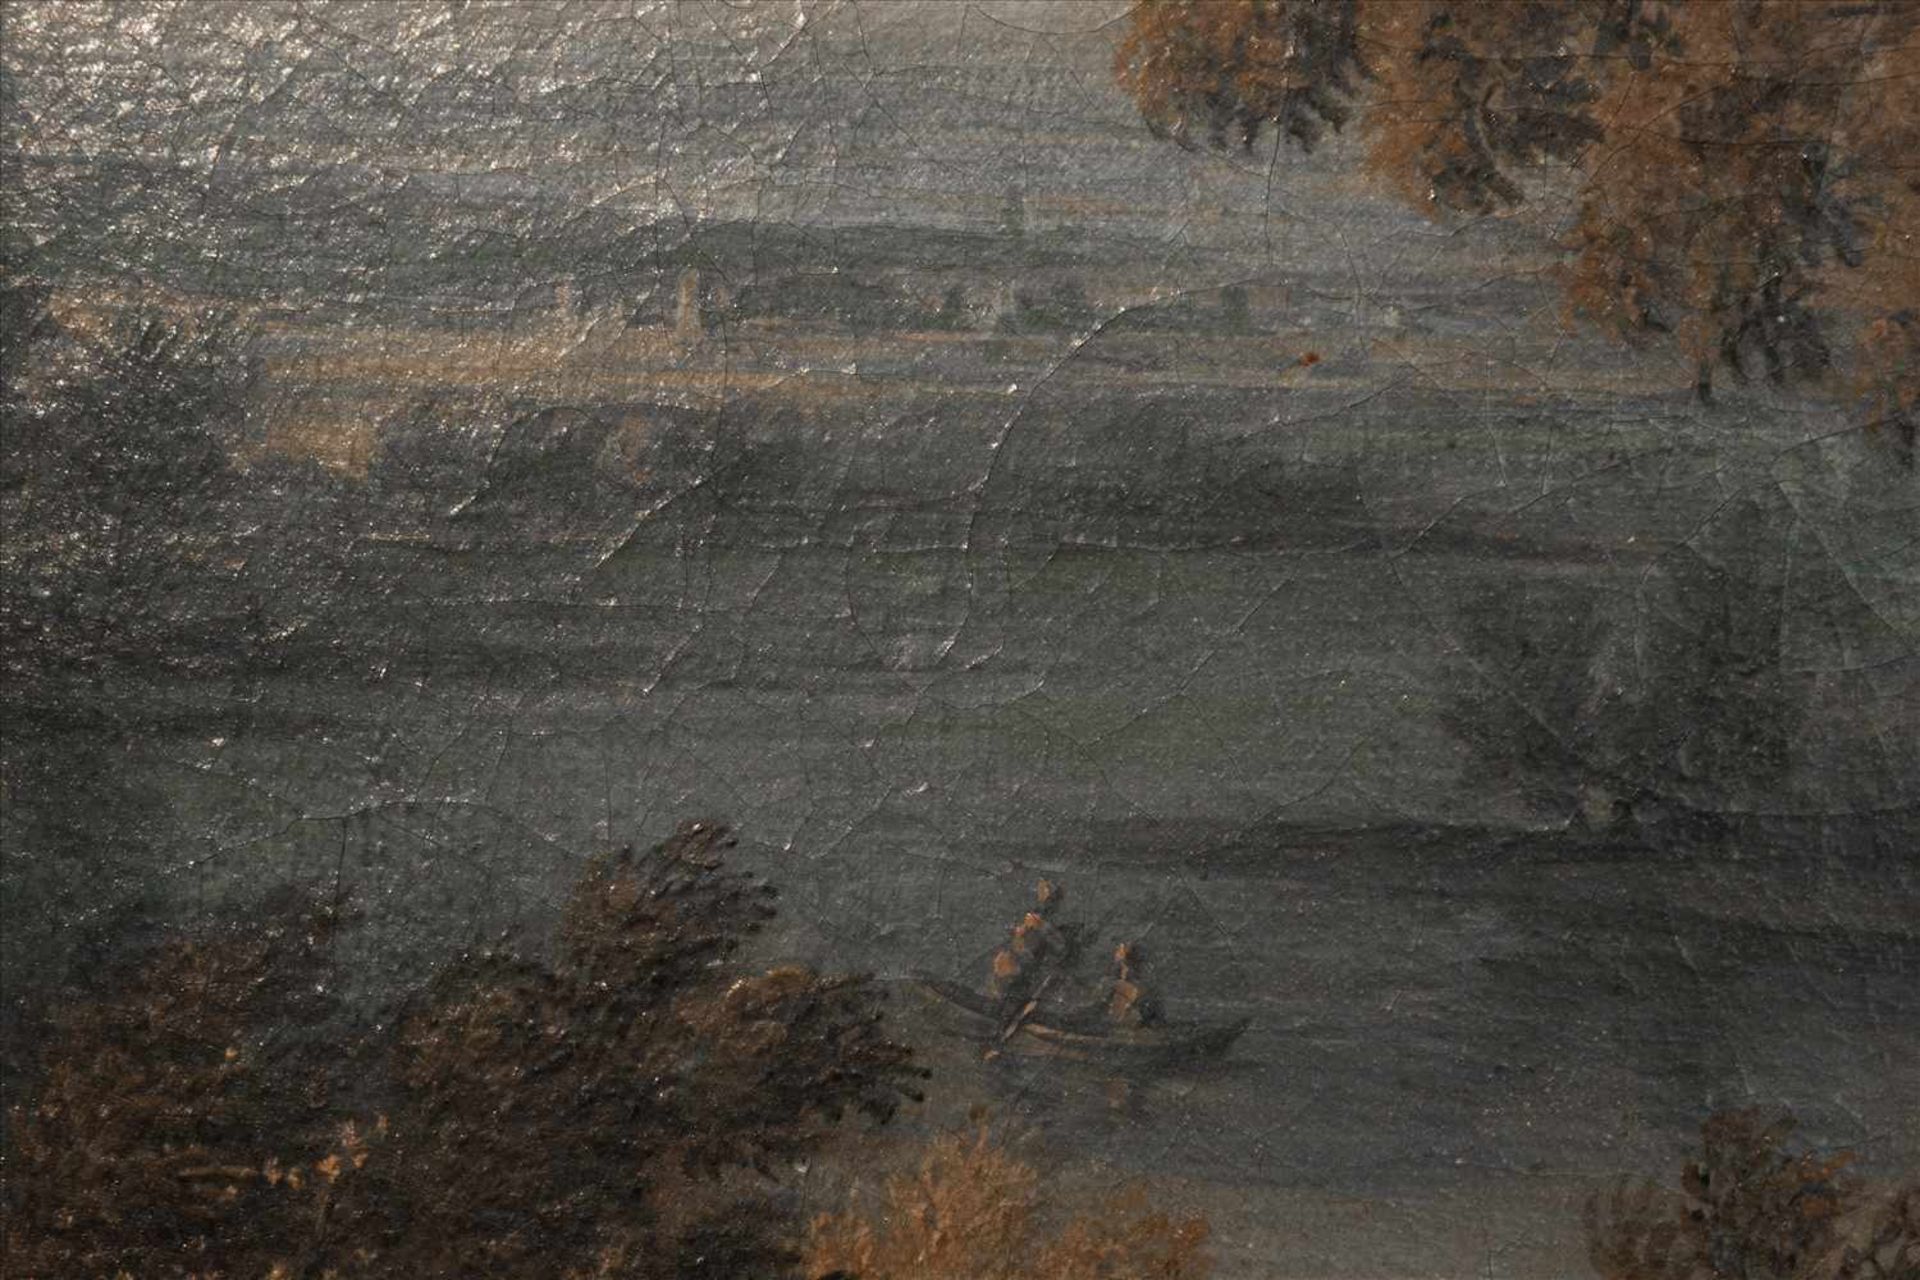 Paar Altmeister Landschaftsgemälde Öl/Lwd, 18. Jh.Wohl italienisch/französische Landschaften, min. - Bild 7 aus 8